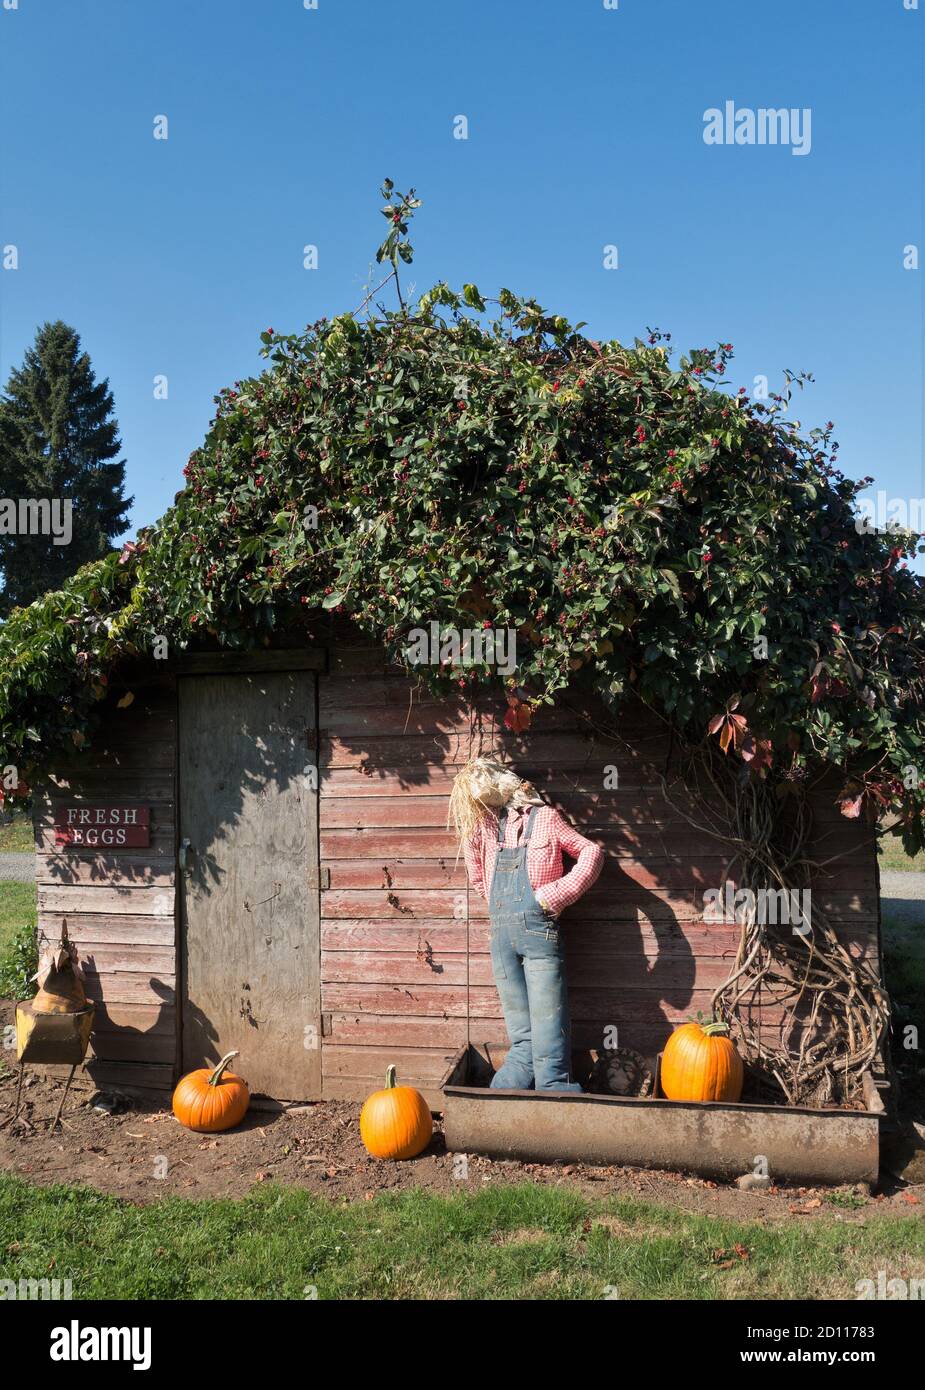 Ein Hühnerstall mit lebenden Pflanzen auf dem Dach dekoriert für Halloween  Stockfotografie - Alamy